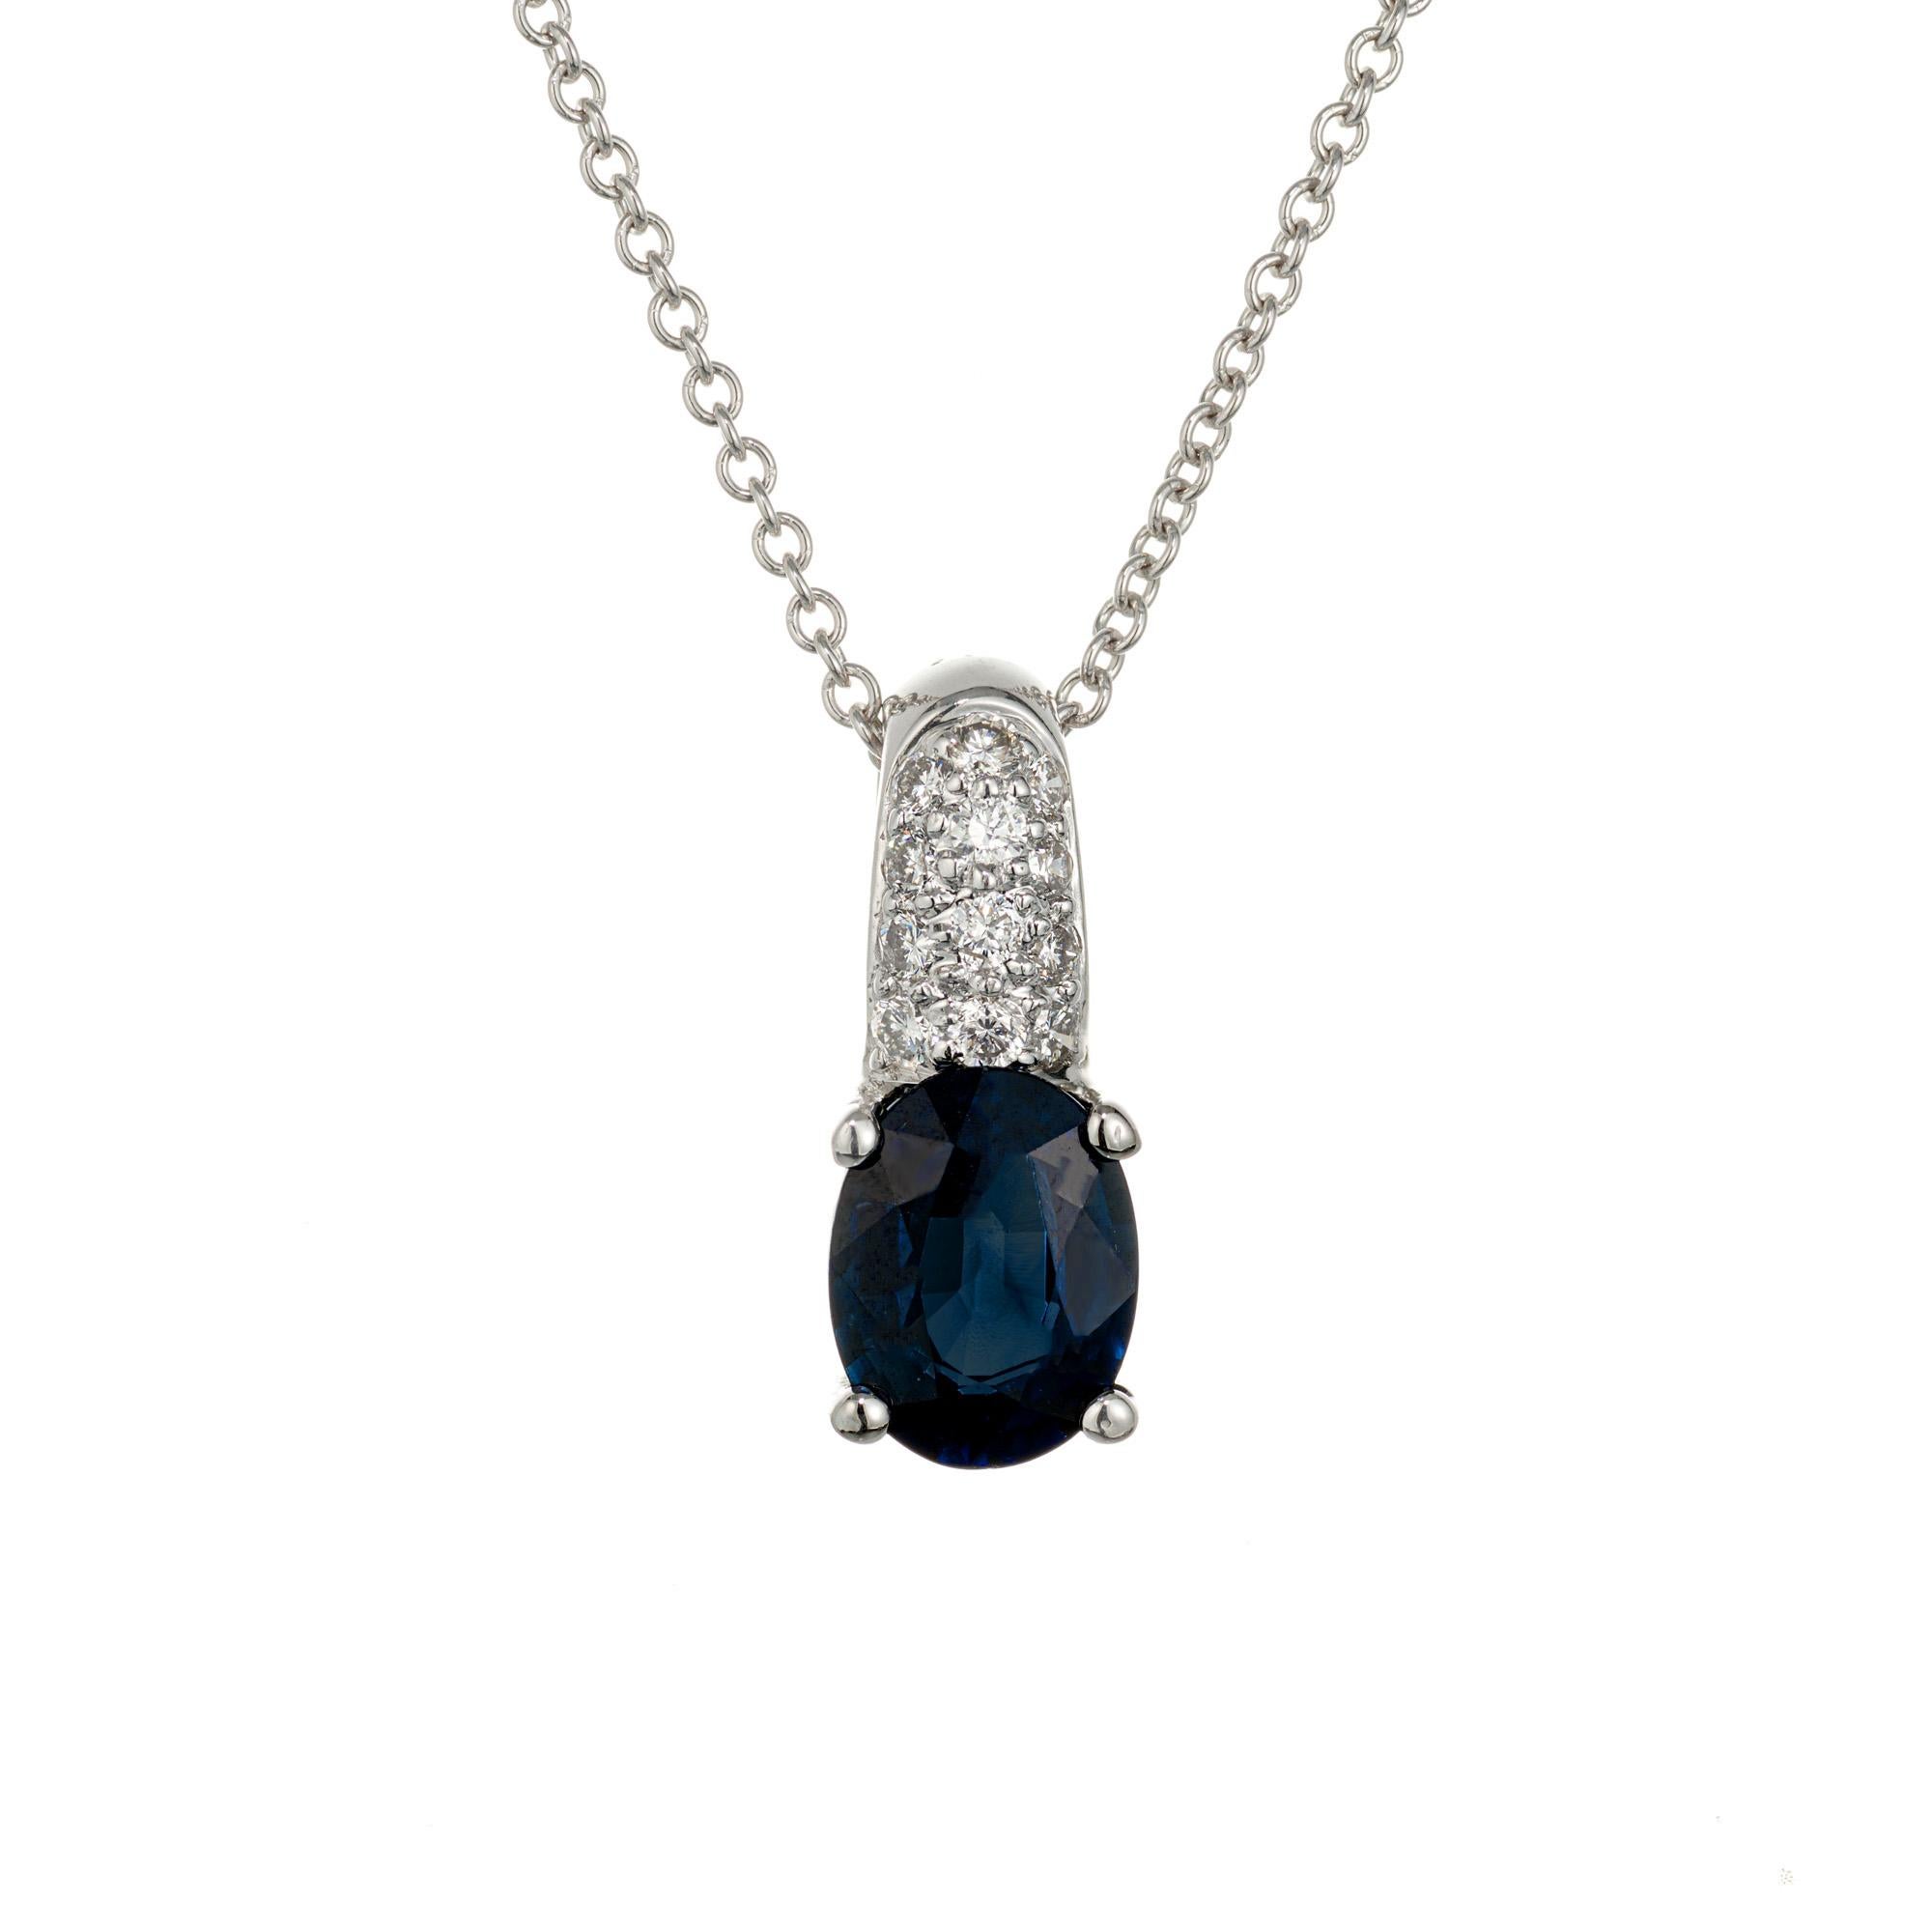 Collier pendentif en saphir et diamant. Saphir bleu ovale de 1,45 carat, naturel et non traité, certifié par le GIA, dans un pendentif en or blanc 18 carats, avec 12 diamants ronds de taille brillant en grappe sur le collier. Chaîne de 18 pouces.